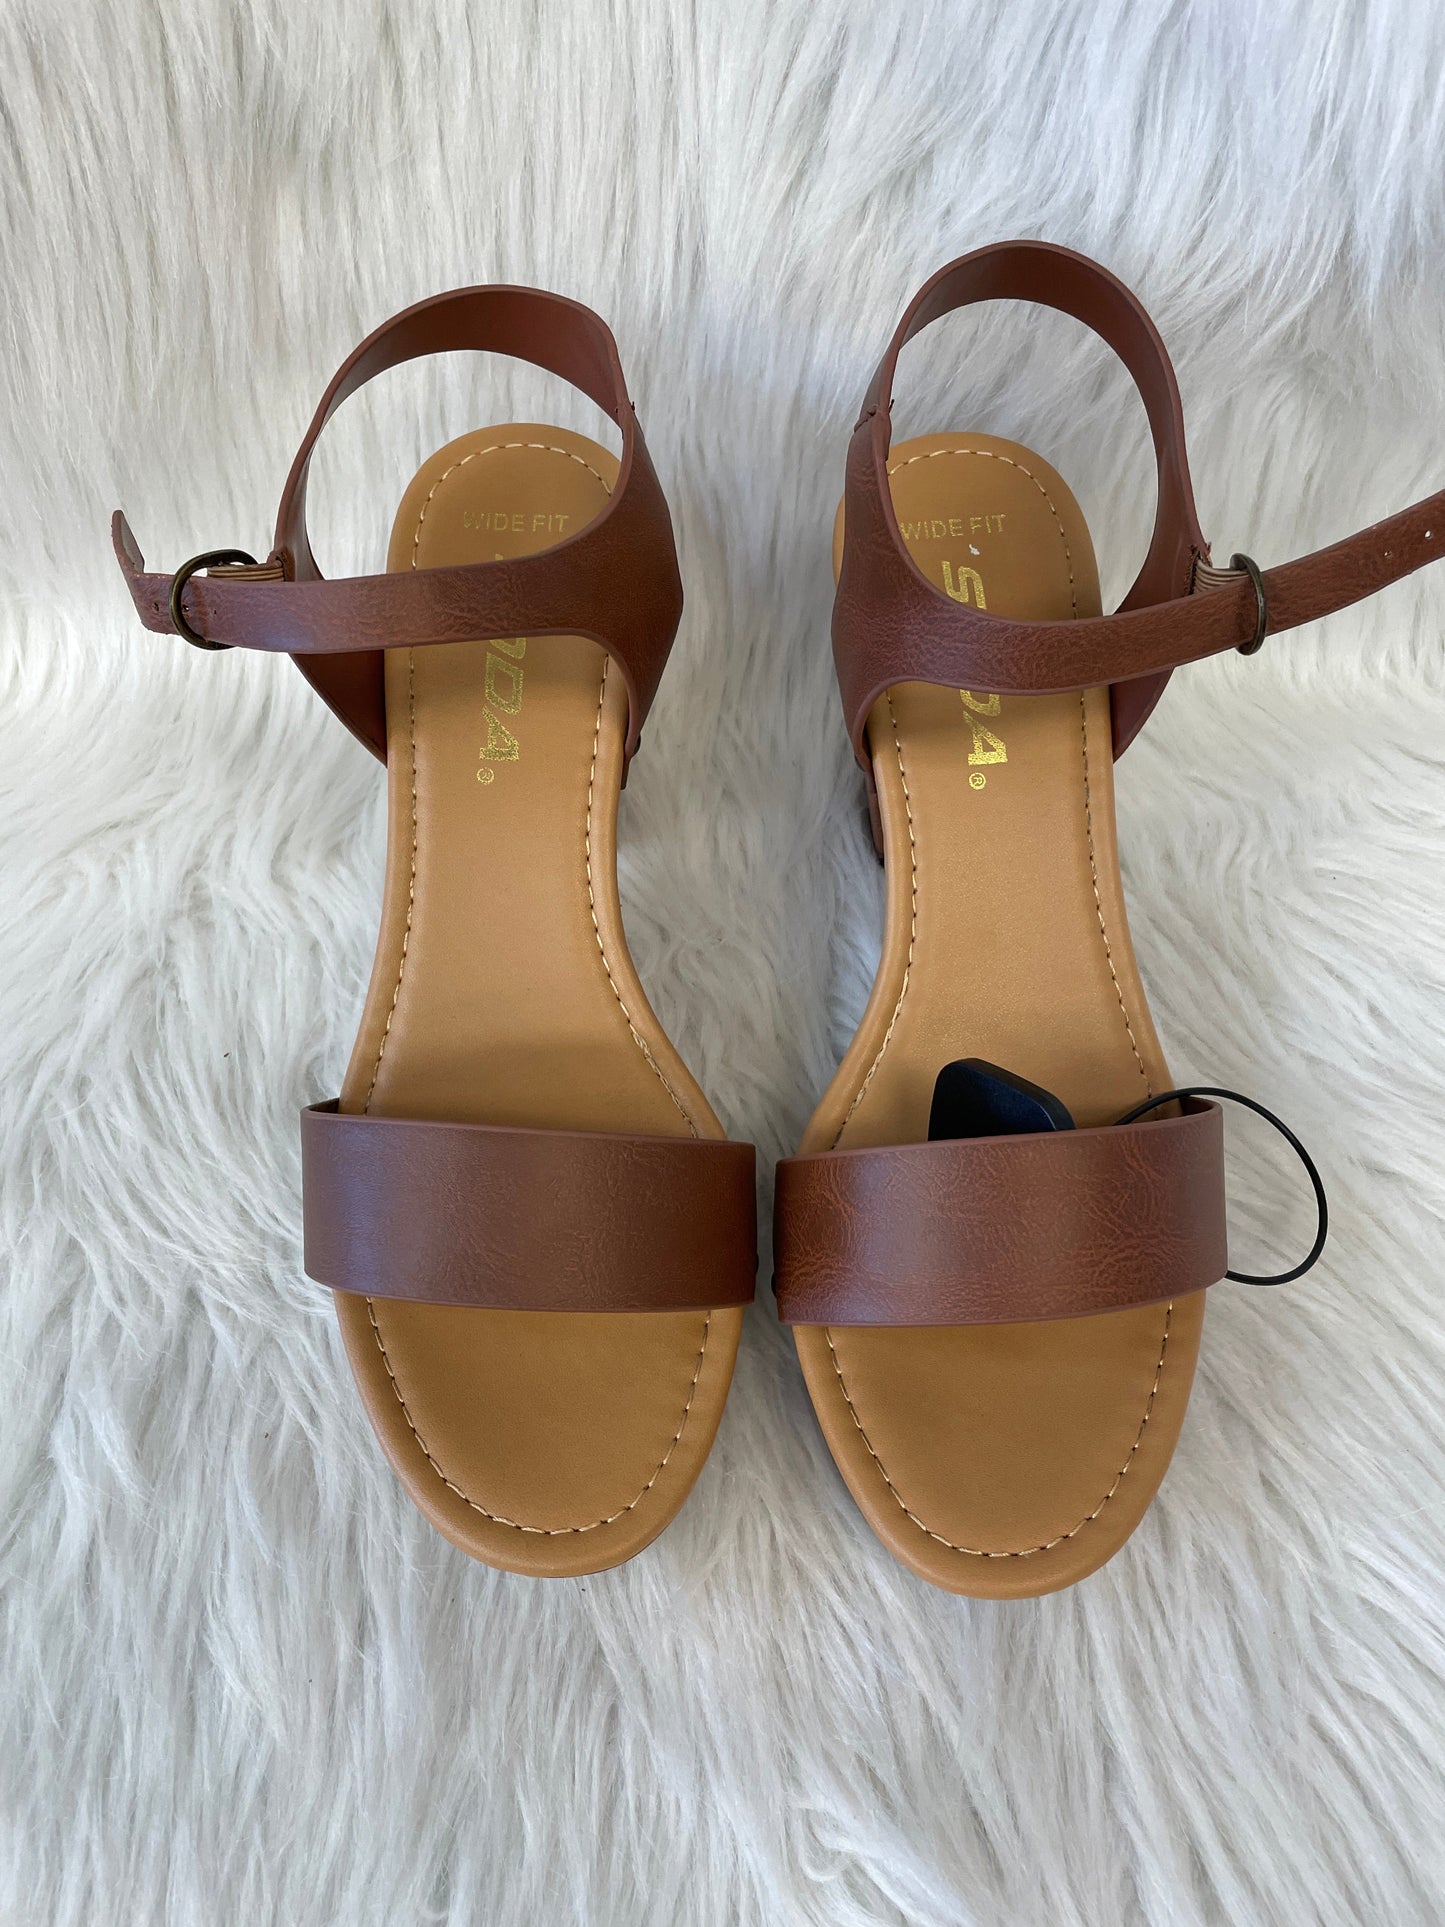 Brown Sandals Heels Block Soda, Size 10